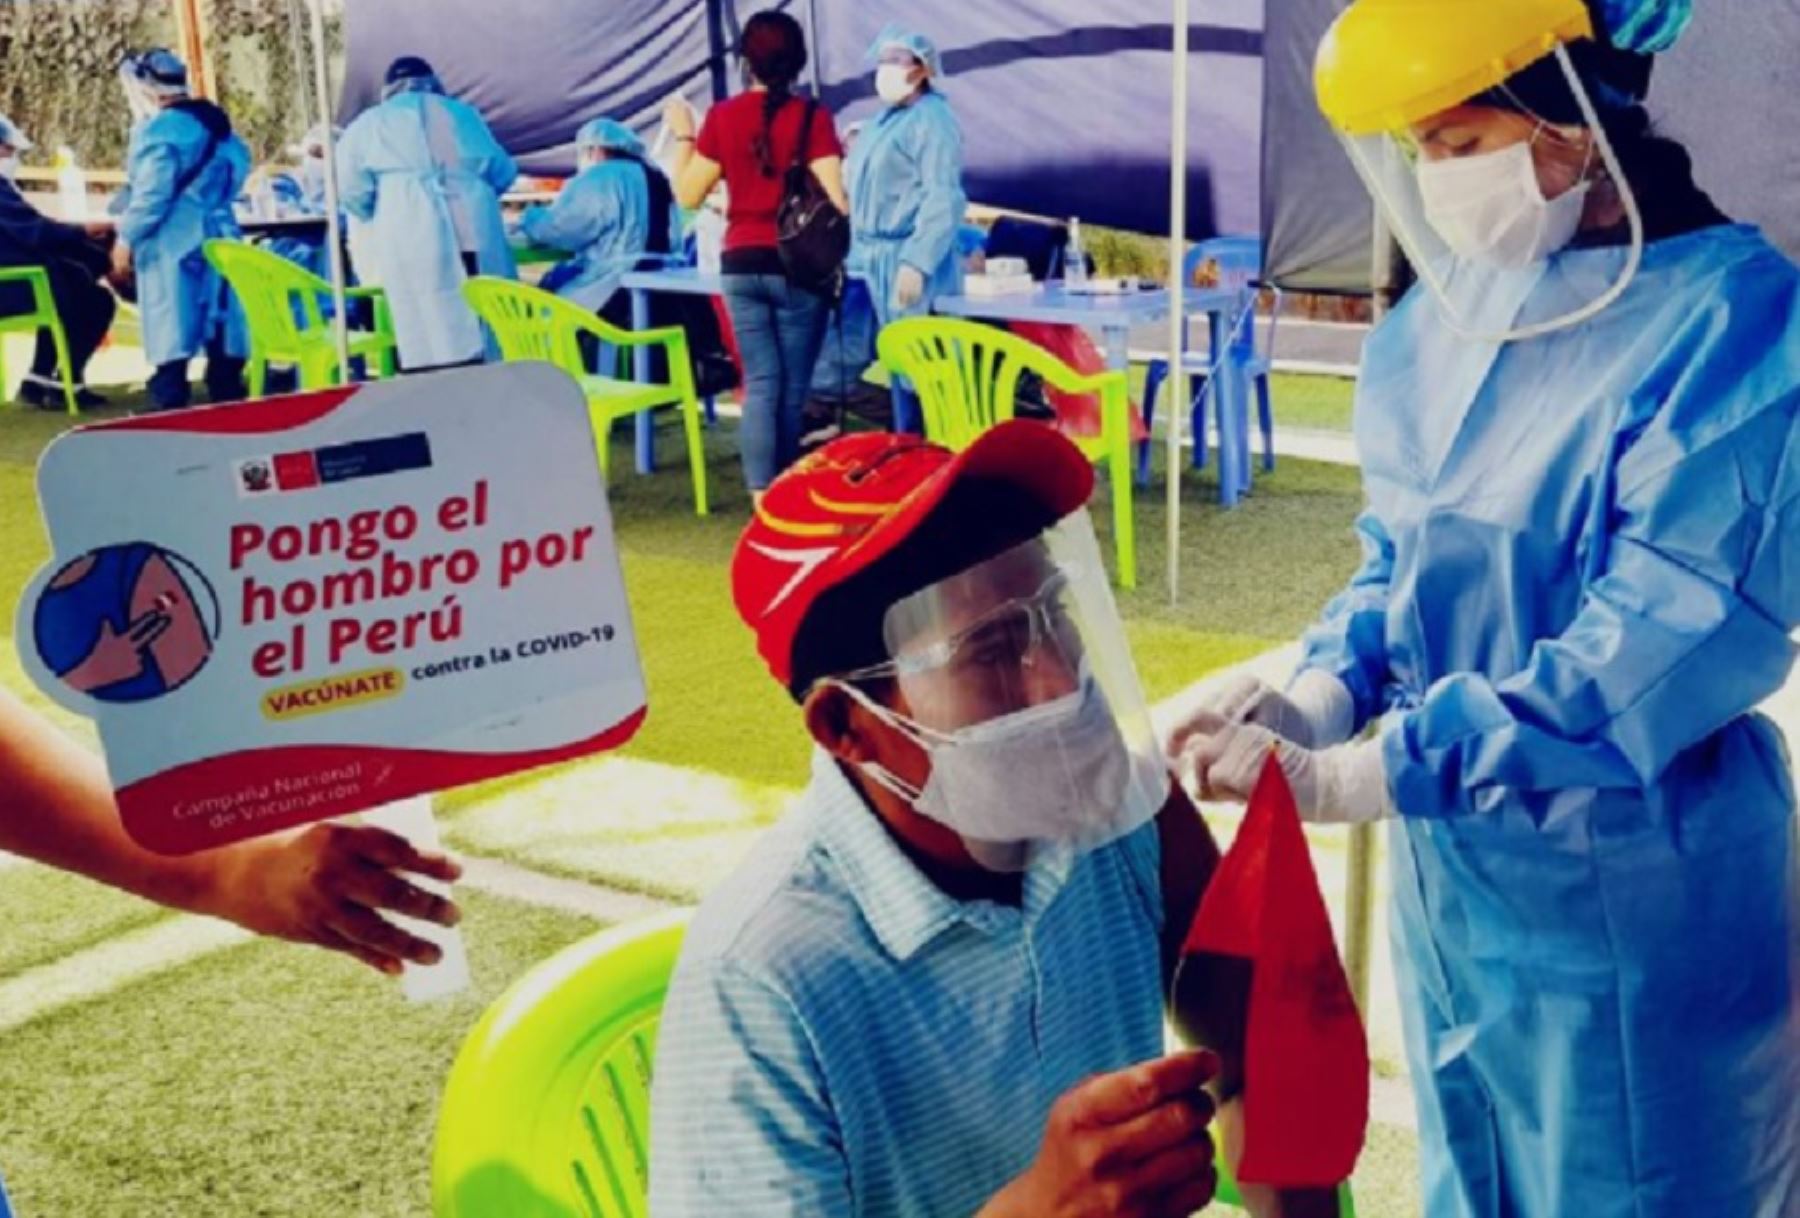 Con éxito se desarrolla el primer día de la tercera Vacunatón contra la covid-19 en la región Arequipa, en los 19 puntos de vacunación instalados para esta jornada de inmunización dirigida a personas de 37 a 39 años.